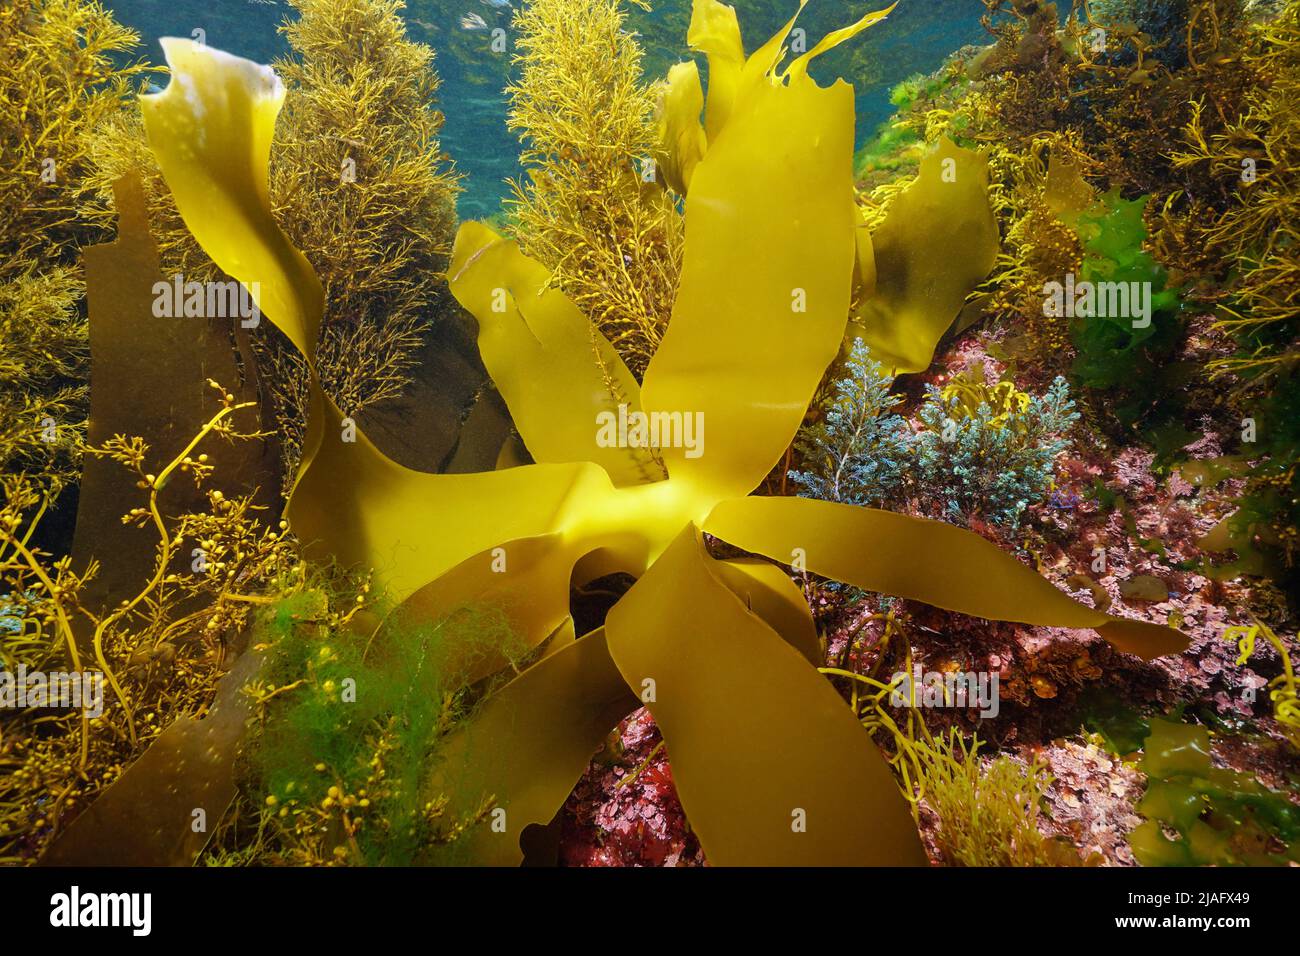 Various marine algae underwater, Atlantic ocean seaweeds, Spain Stock Photo